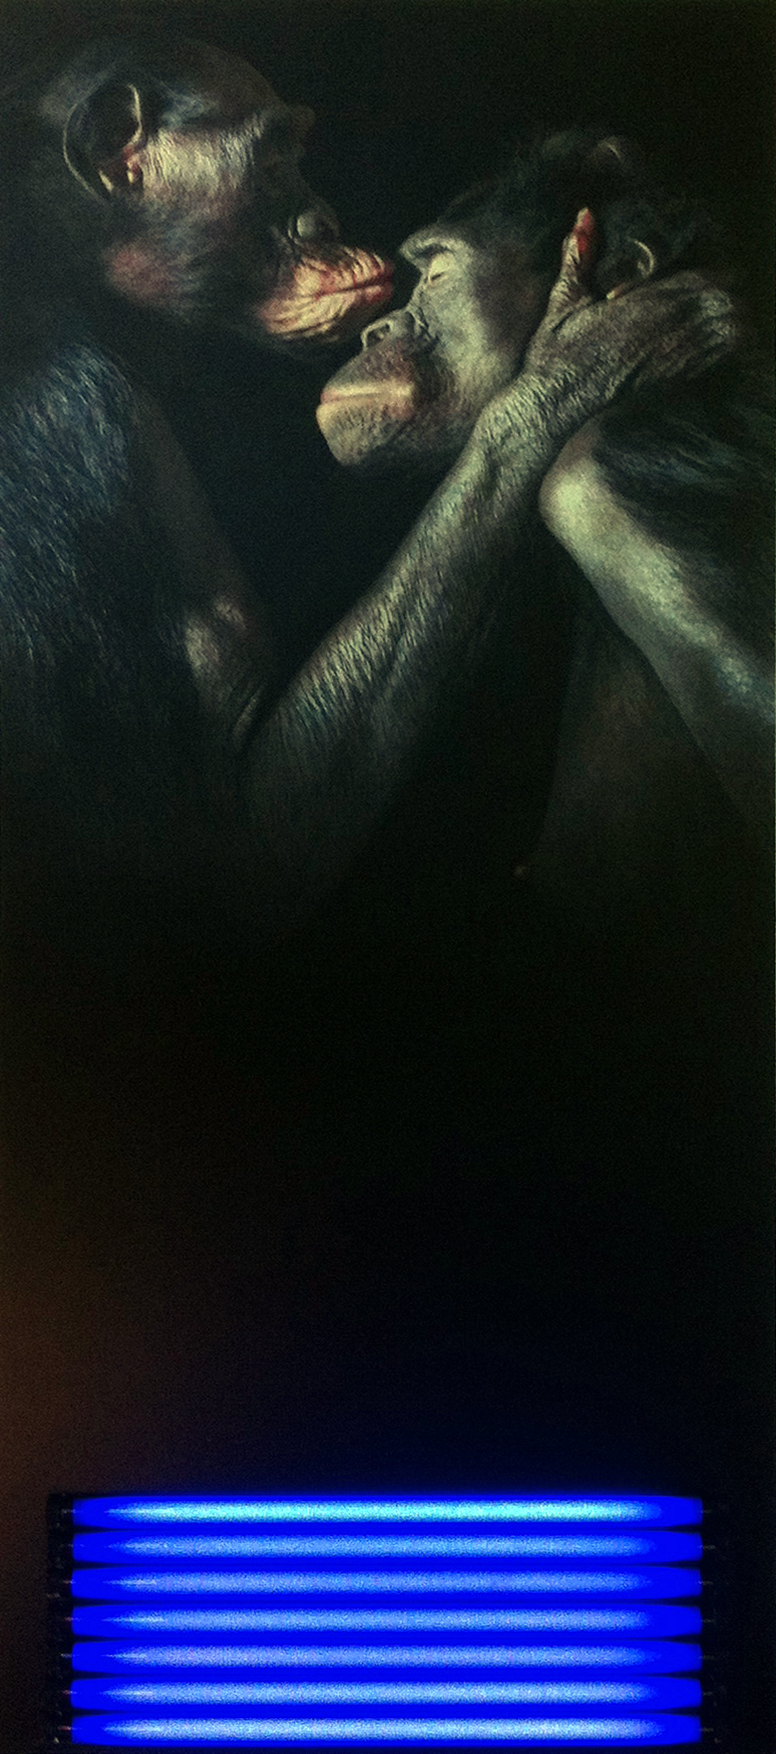 Le silence au baiser  2013   photographie sur pvc, peinture numérique, néons   170cm x 72cm